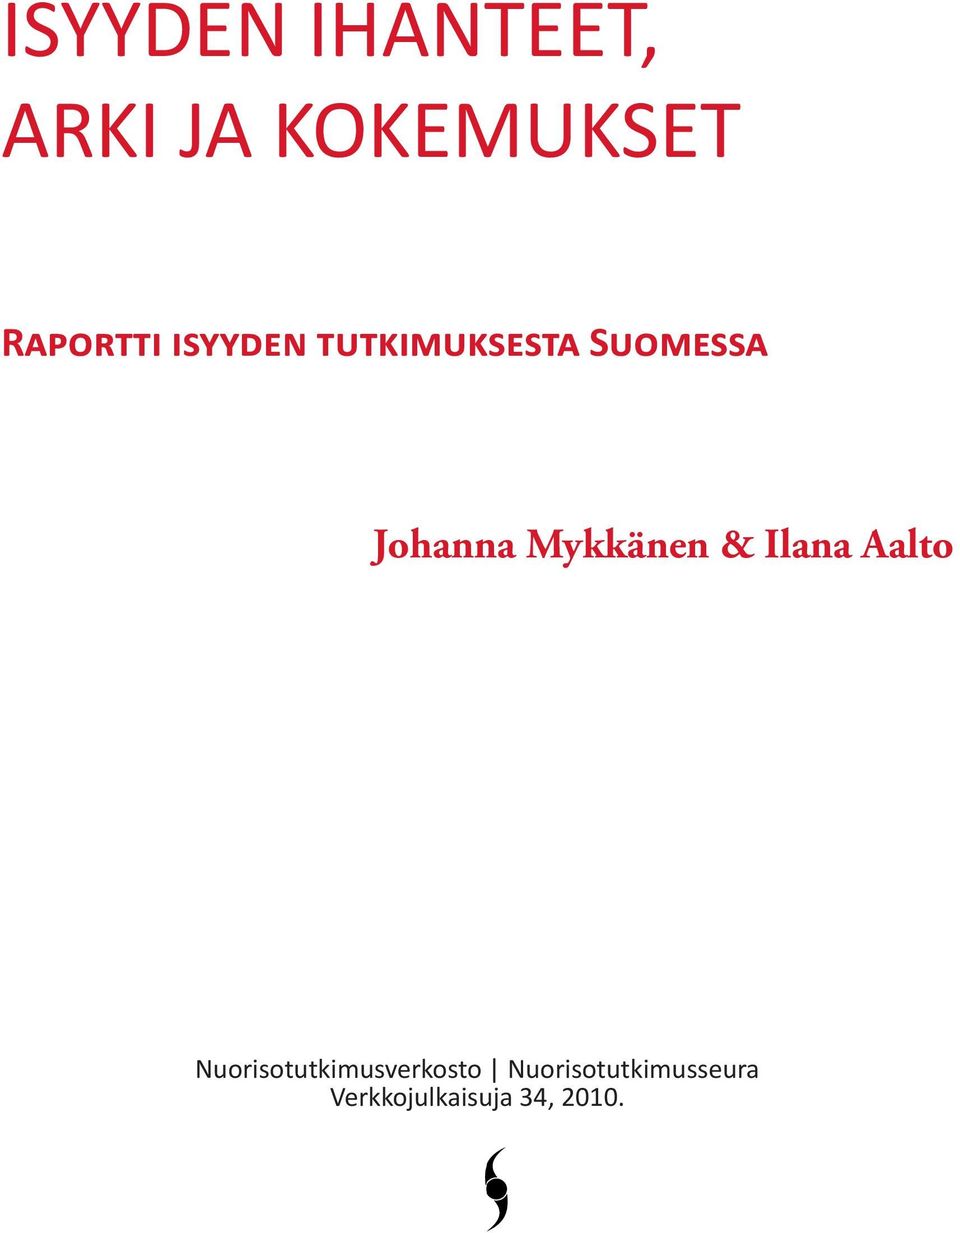 Johanna Mykkänen & Ilana Aalto